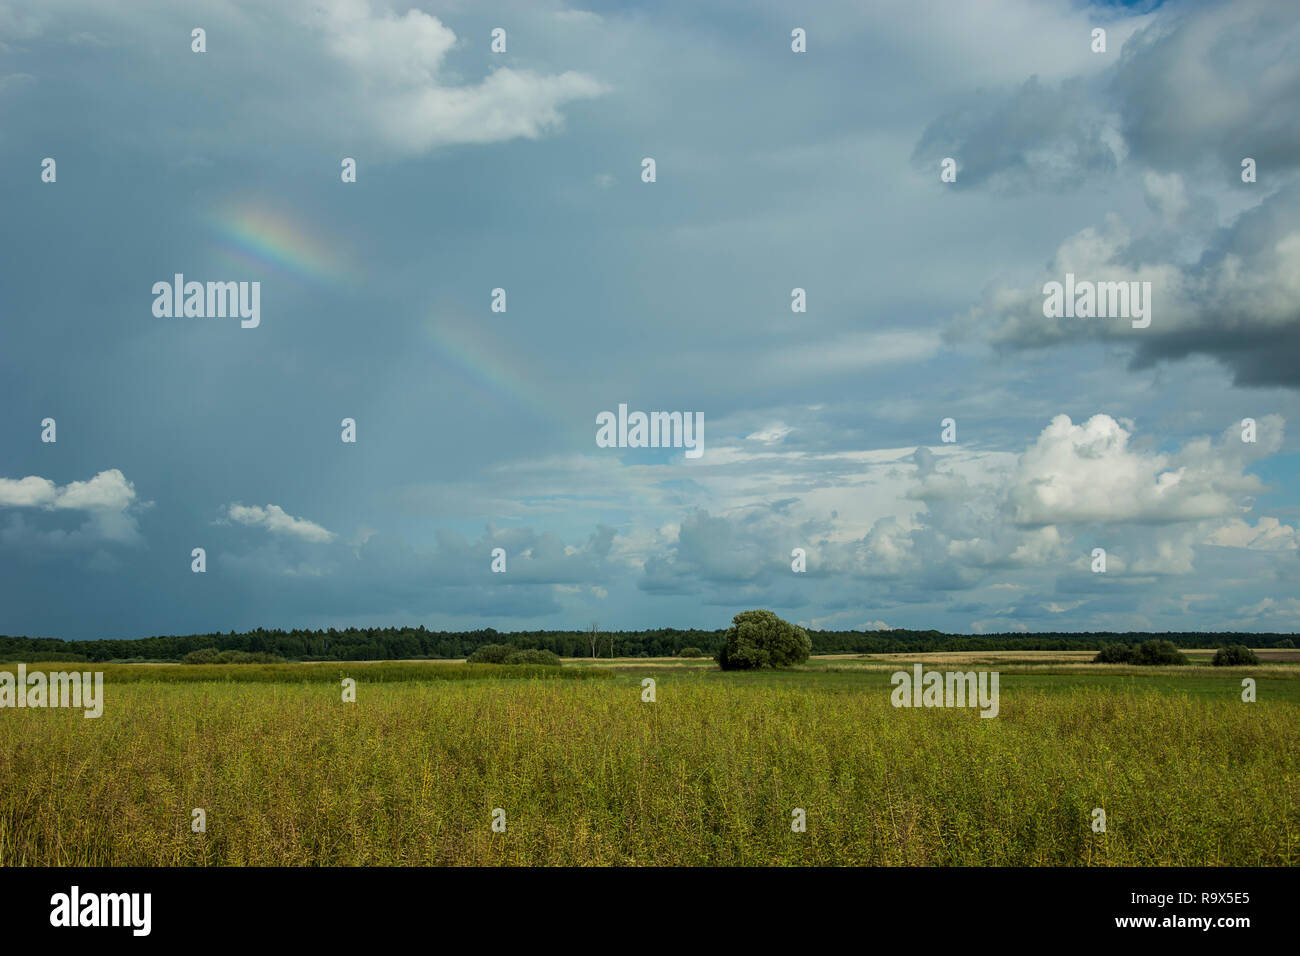 Feld mit Getreide, Horizont und Rainbow an einem bewölkten Himmel Stockfoto